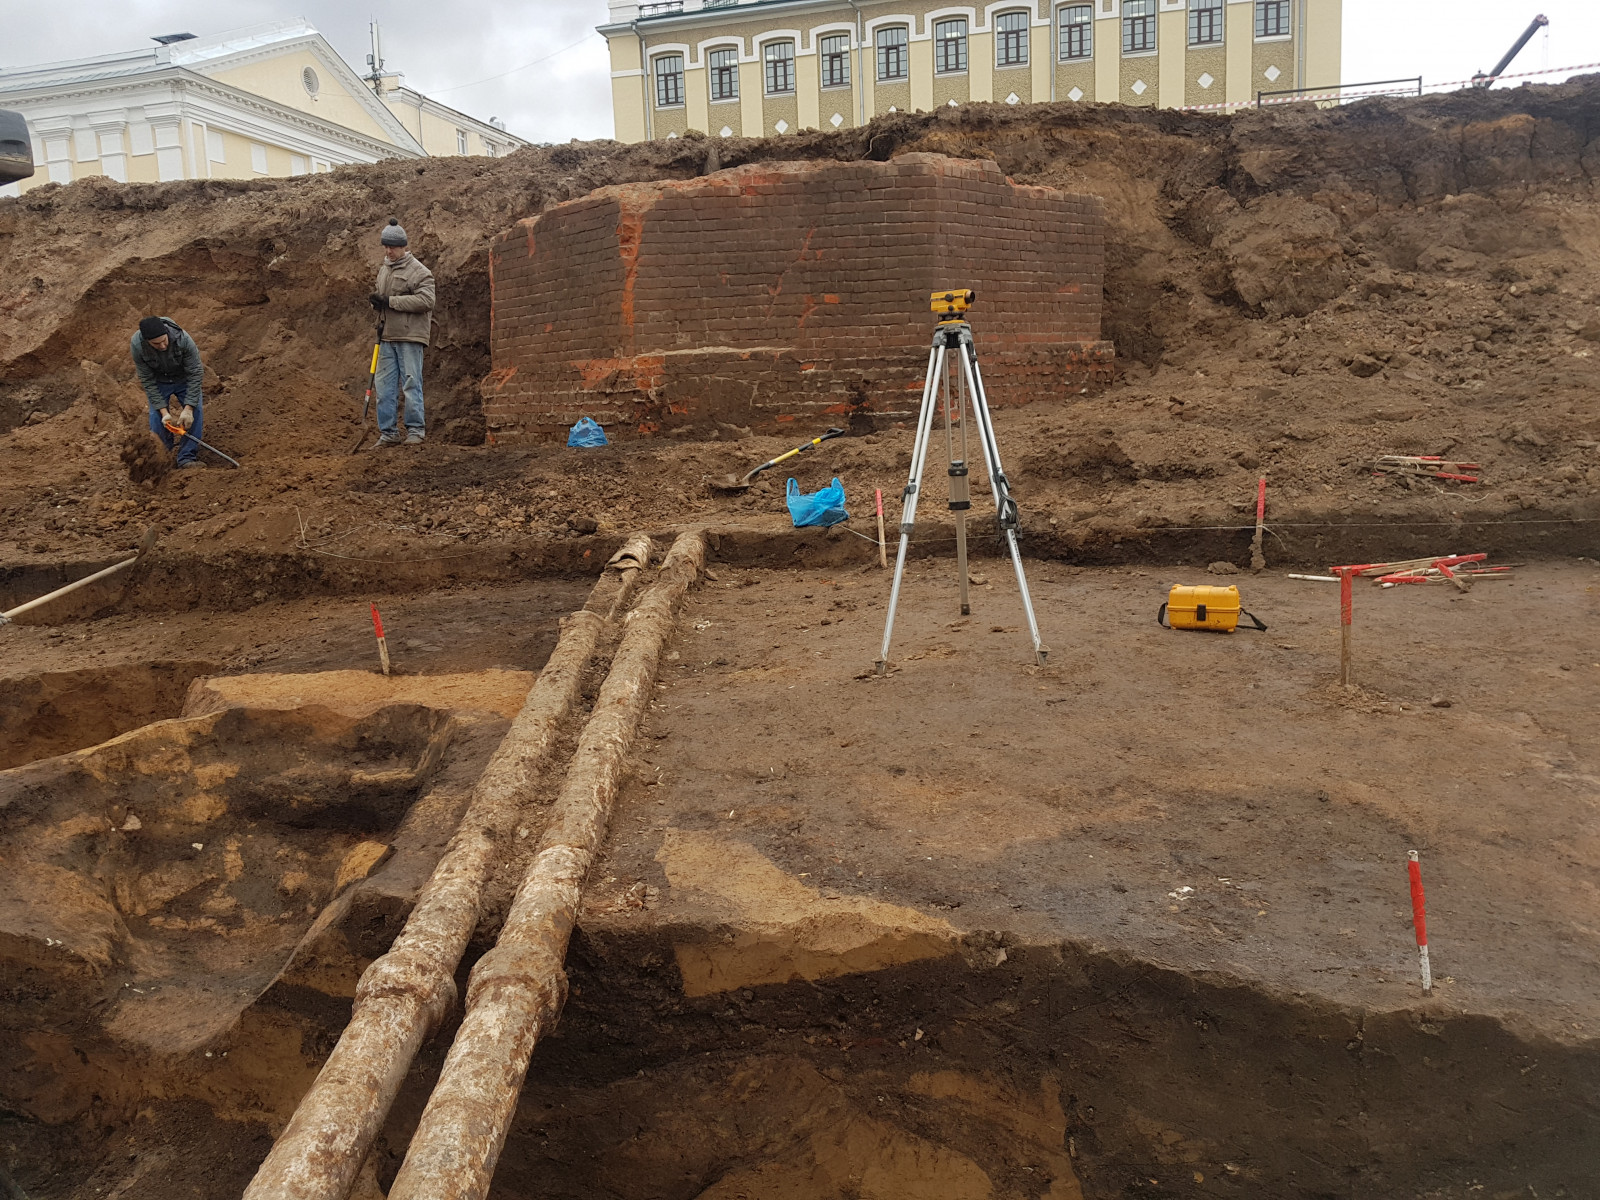 Новгород археологические раскопки